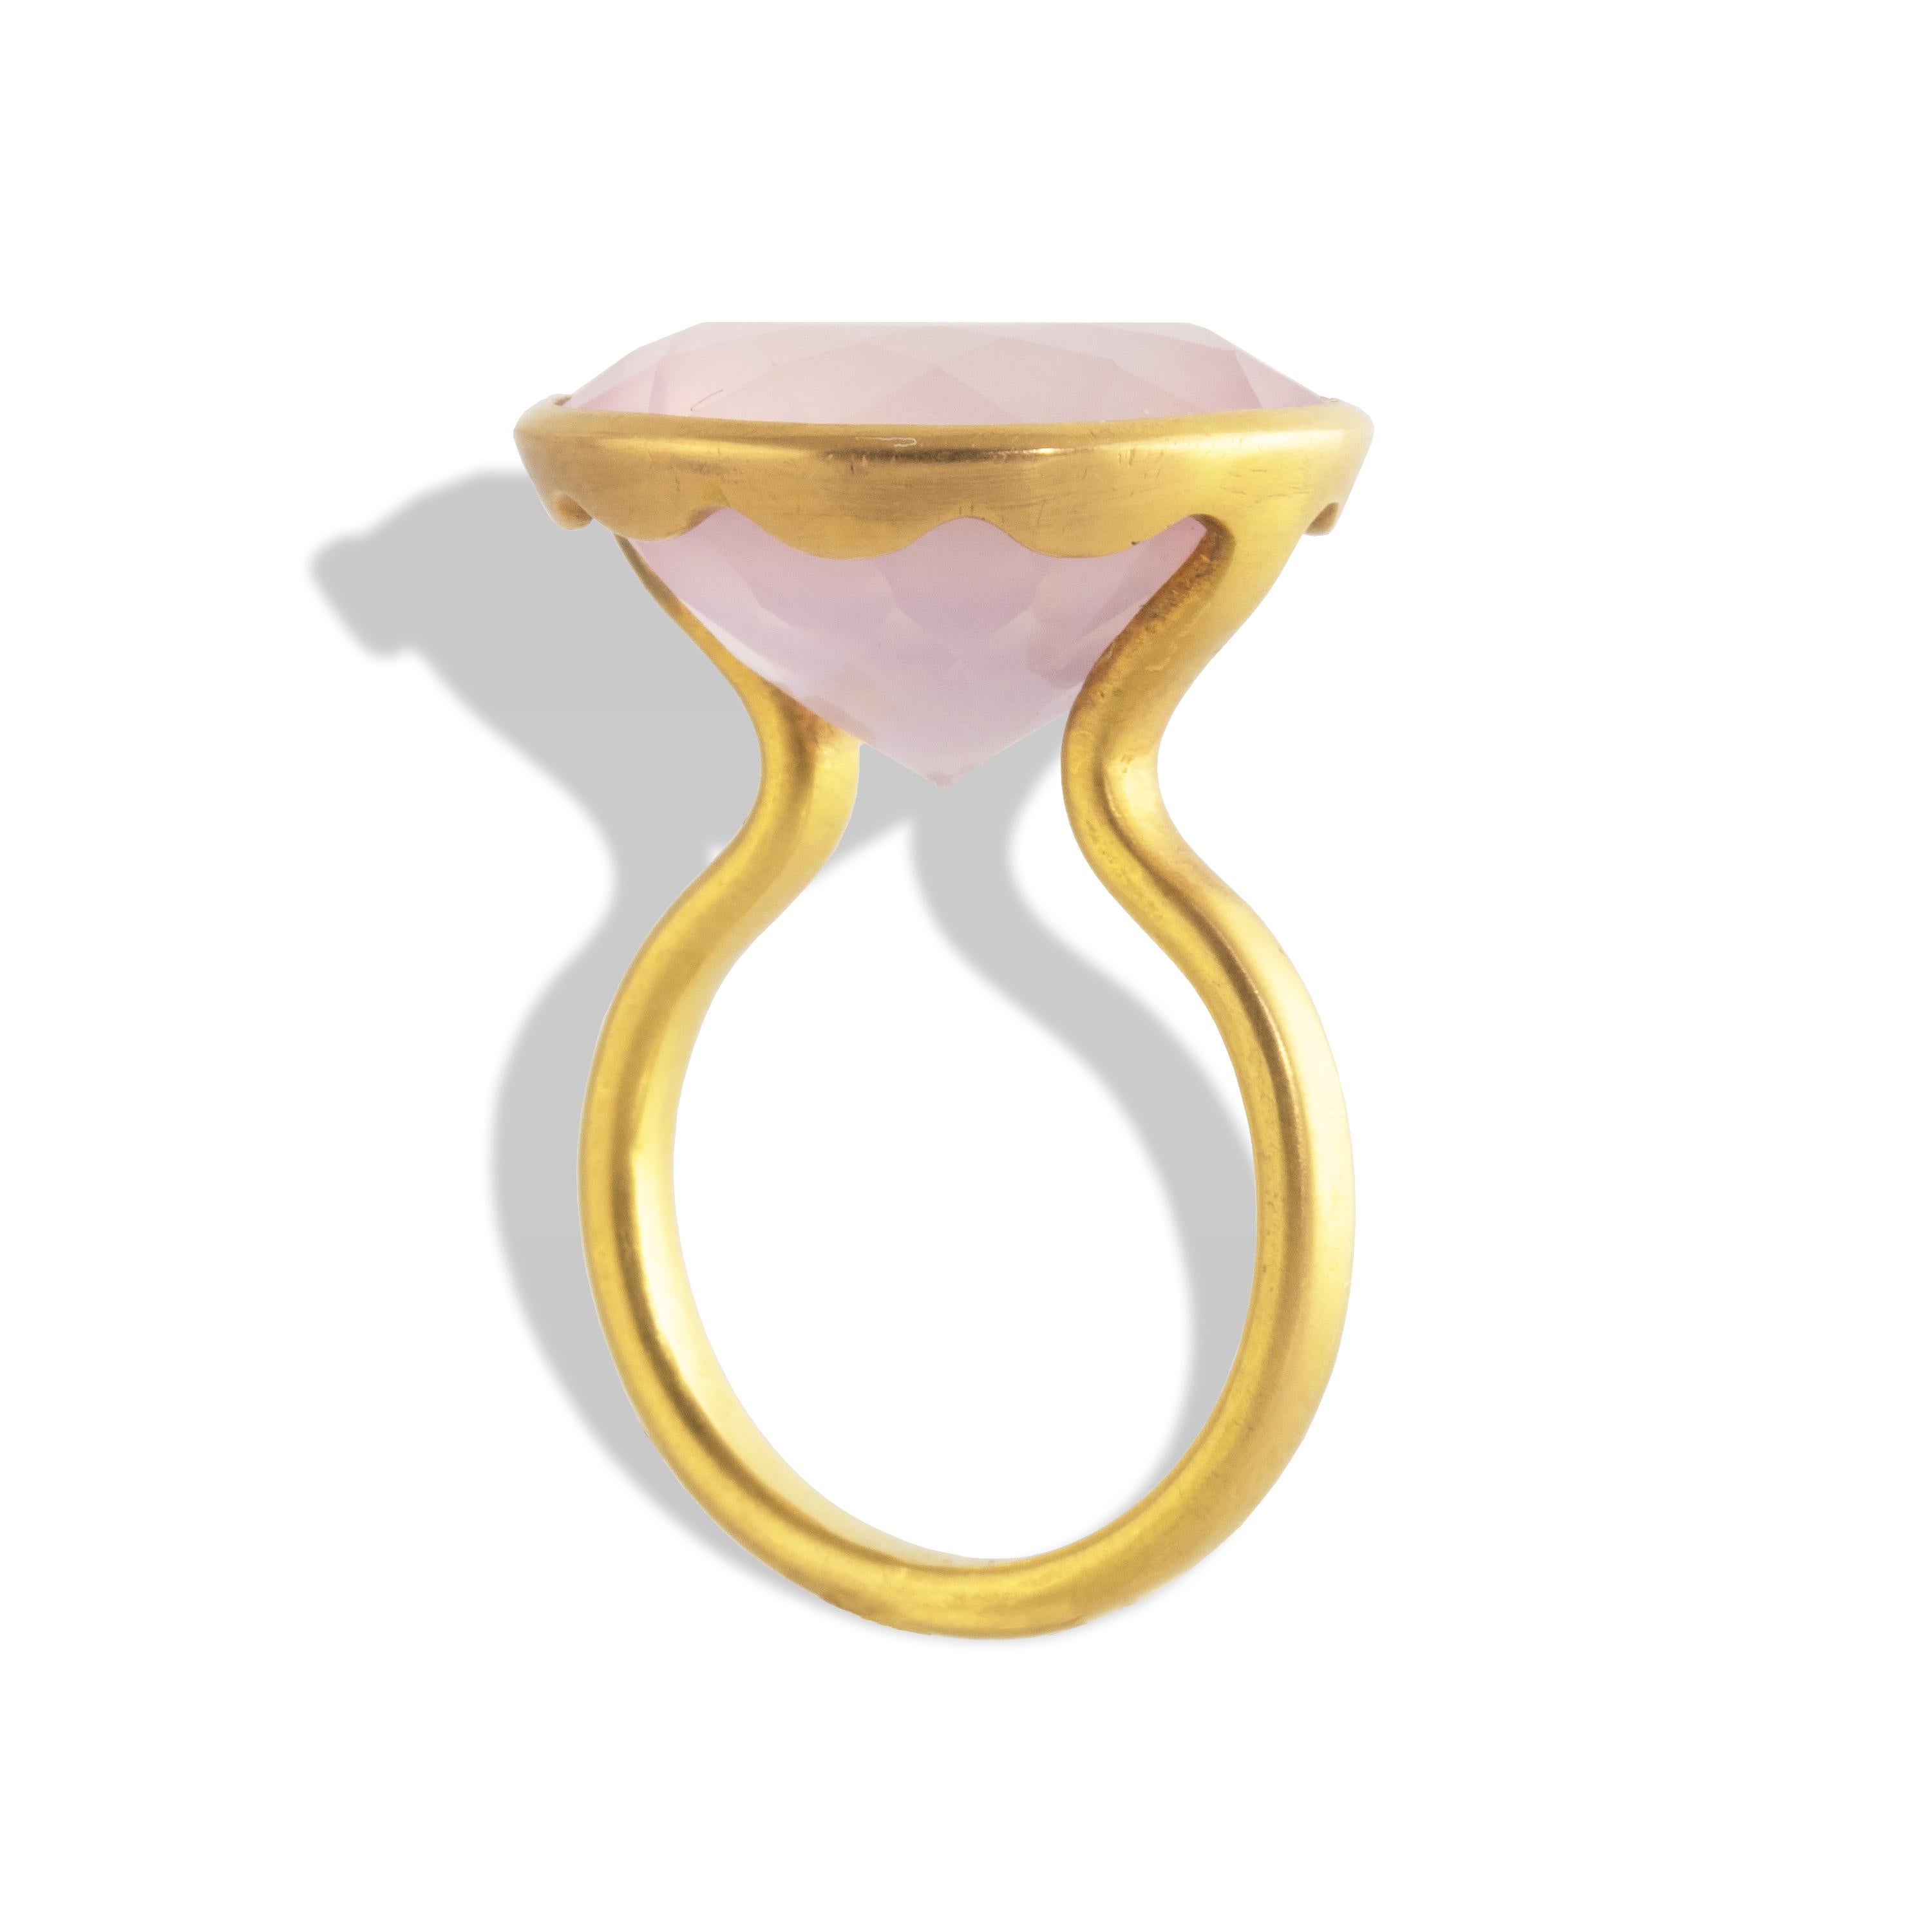 22 carat rose gold ring